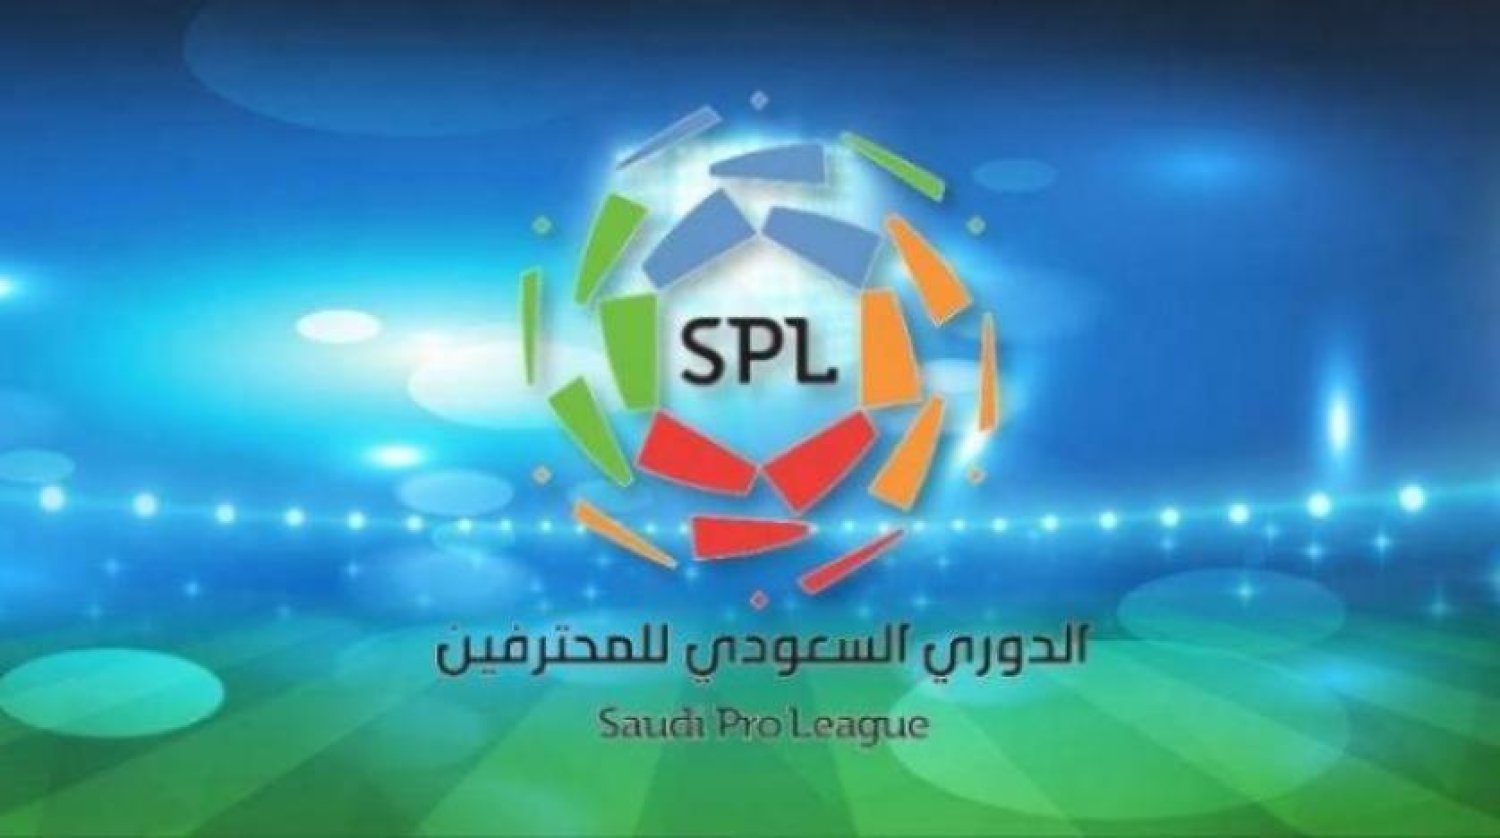 Saudi pro league. Saudi Pro League logo без фона. Saudi Arabia Pro League. Saudi Pro League spending.